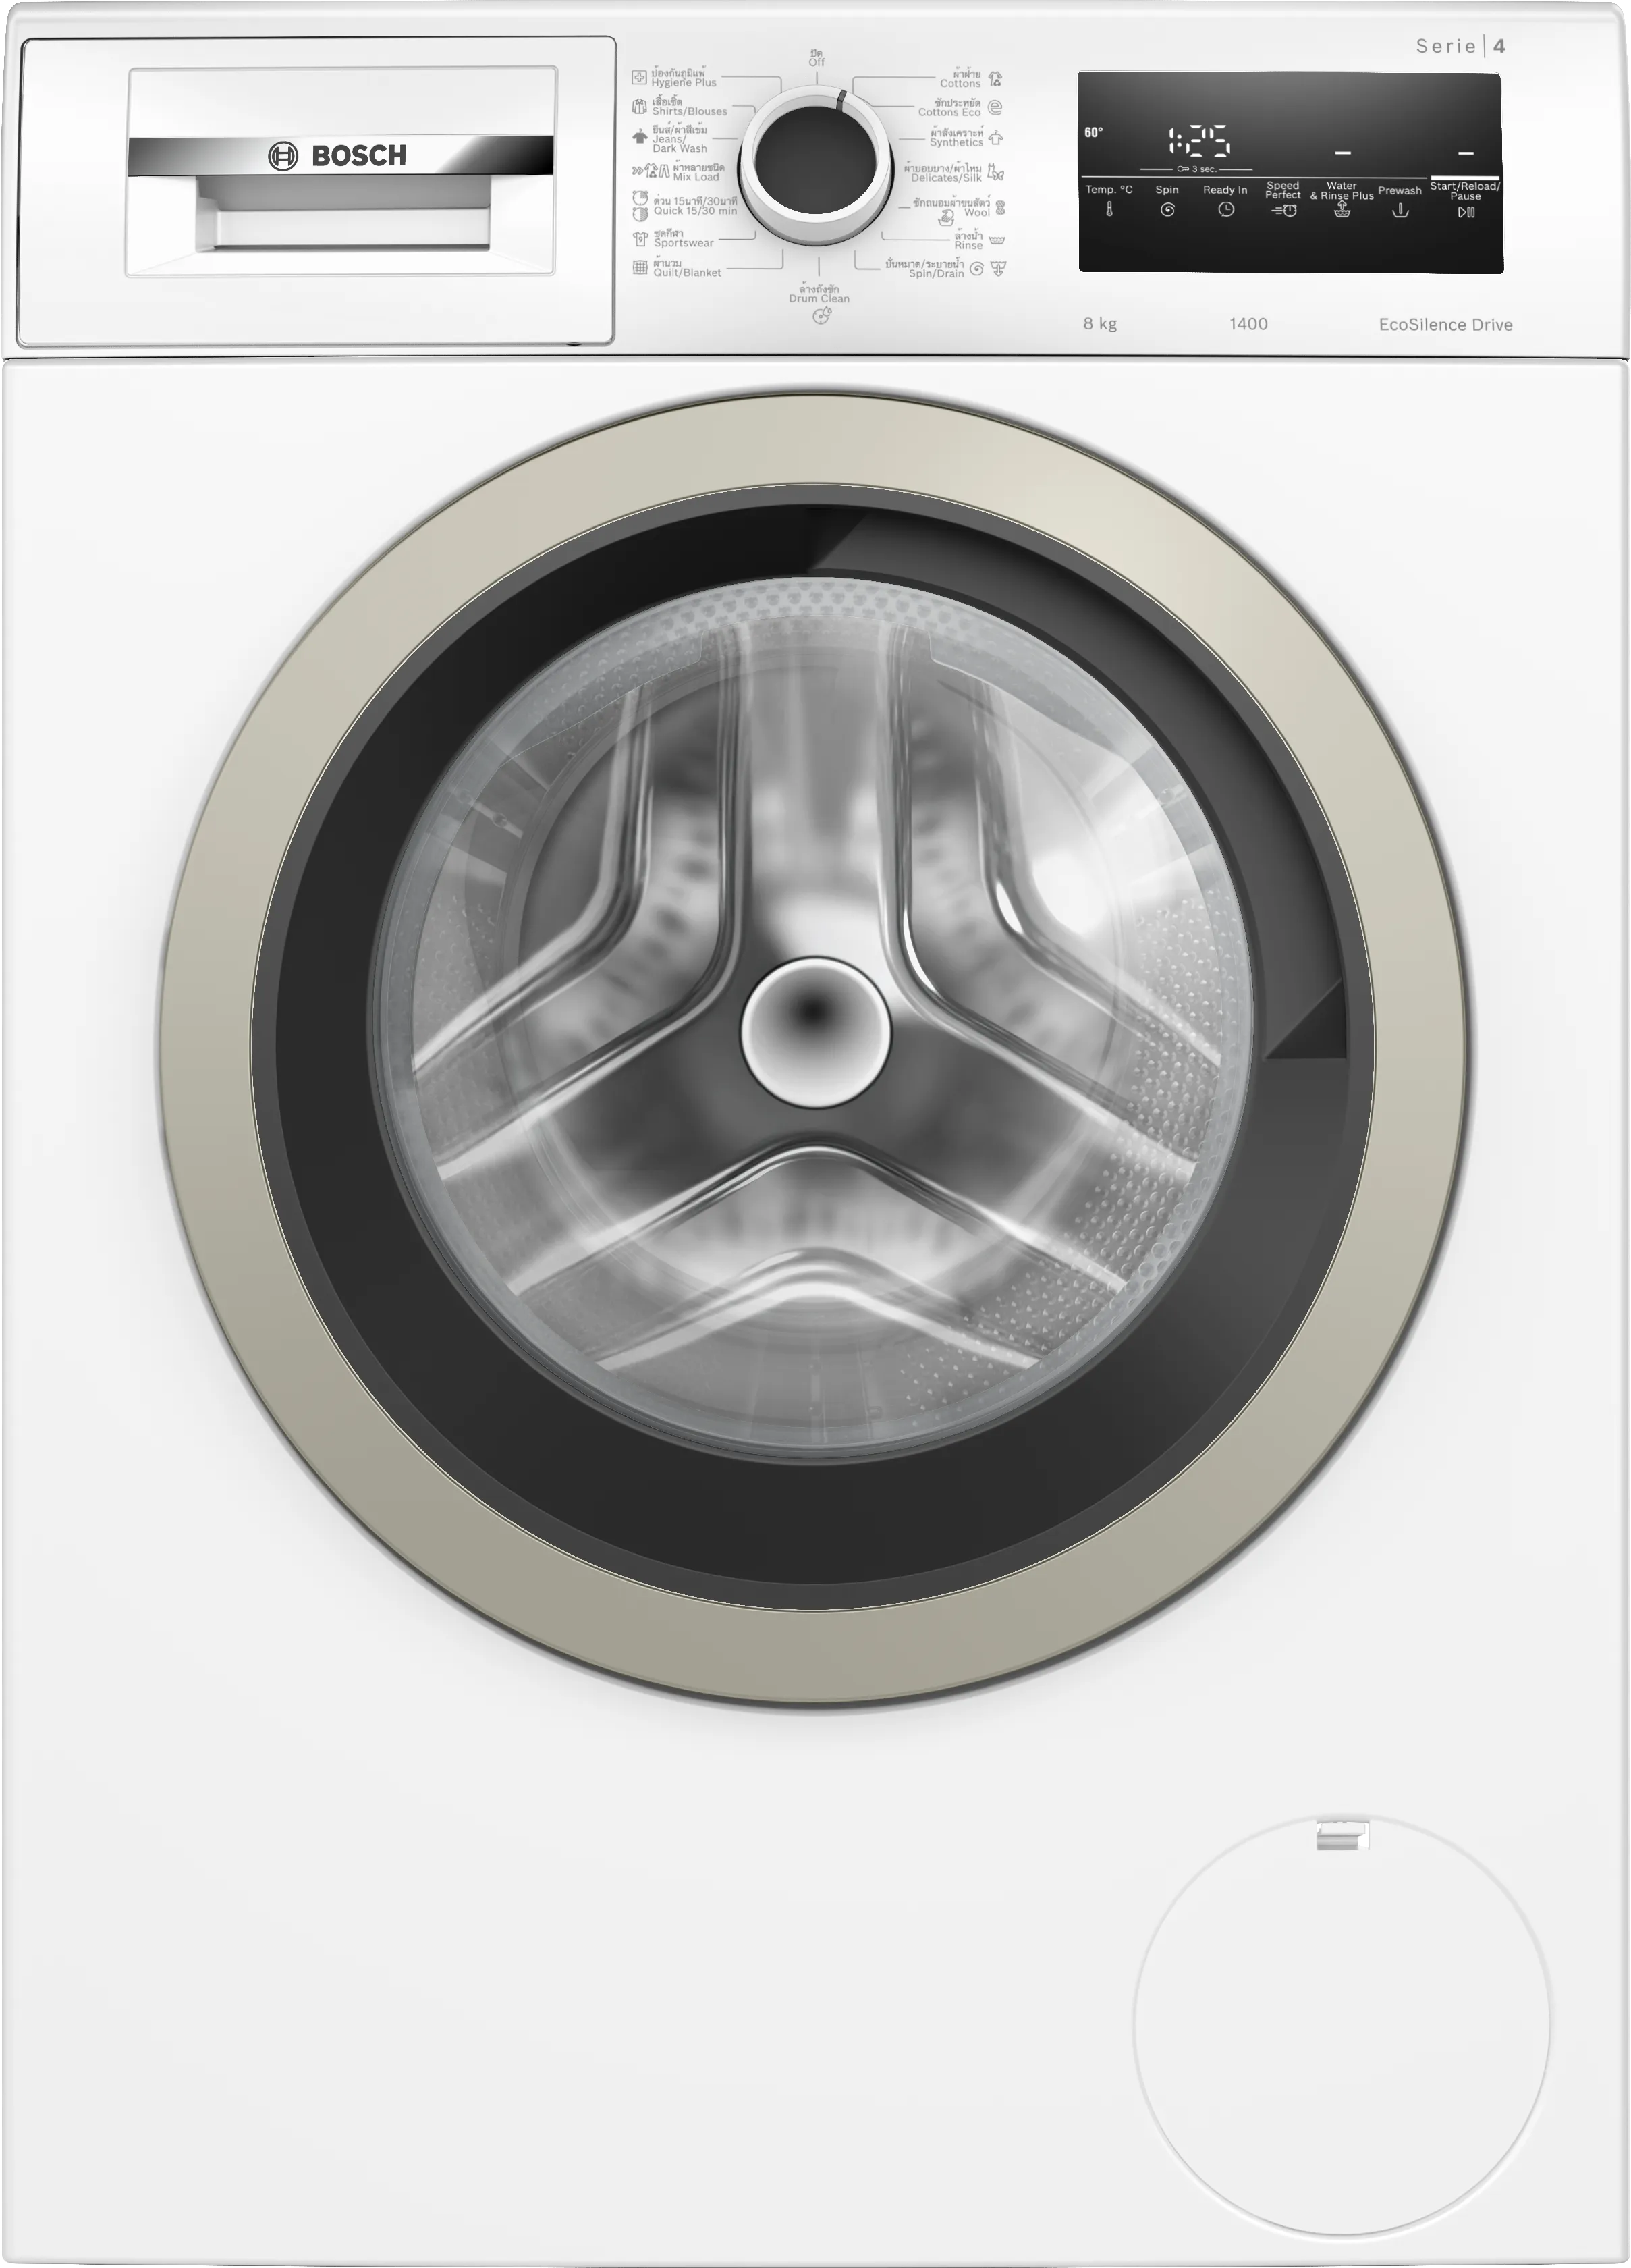 Series 4 washing machine, front loader 8 kg 1400 rpm 